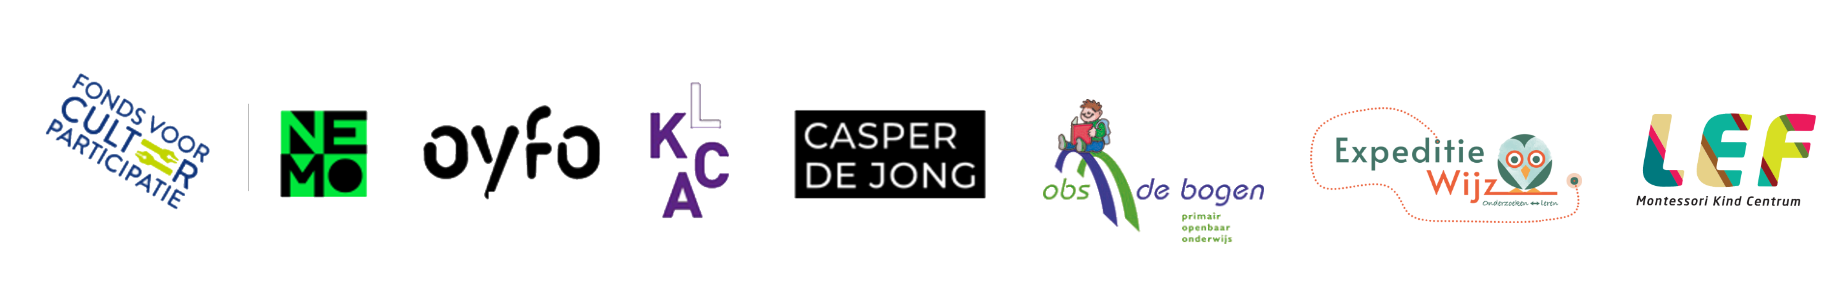 Fonds voor cultuurparticipatie, Casper de Jong, LKCA, NEMO en OYFO